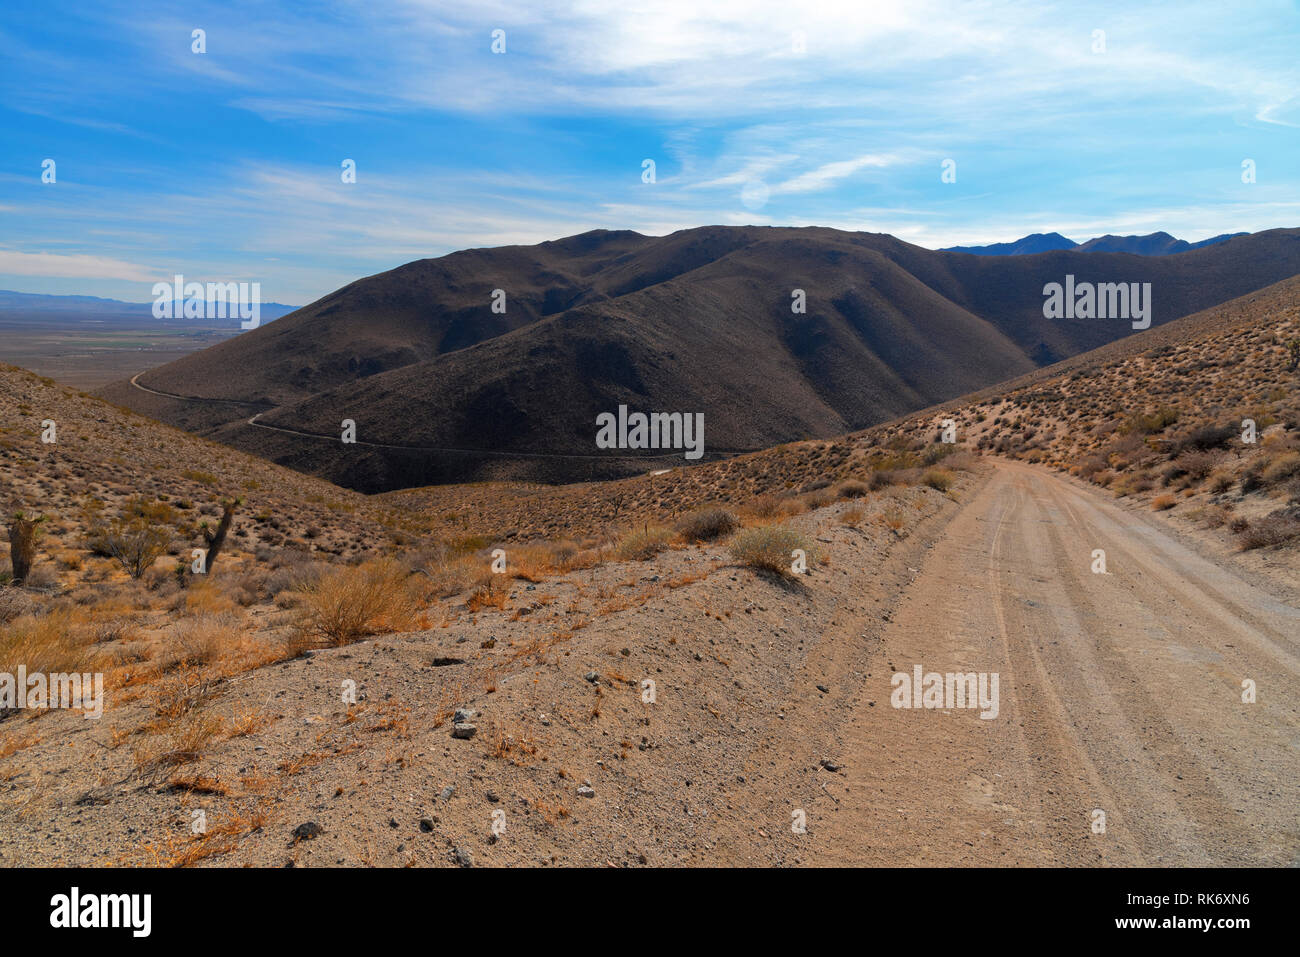 Deserto montagna strada sterrata che conduce verso la montagna sopra la valle sottostante sotto il luminoso cielo blu con nuvole bianche. Foto Stock